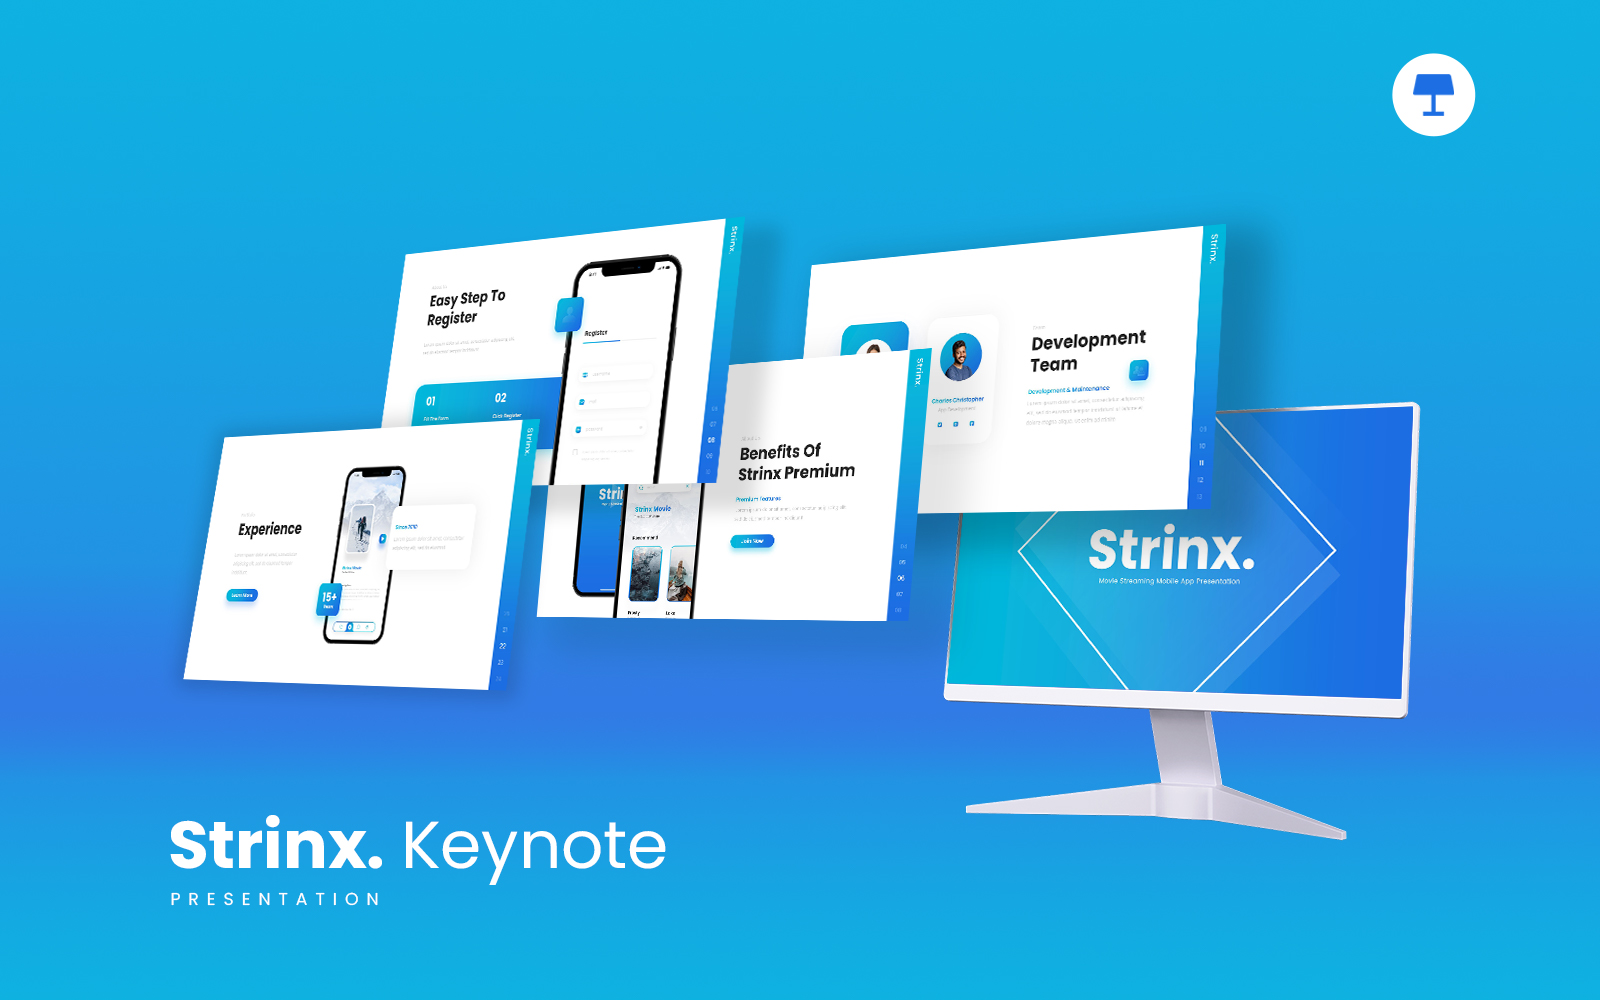 Strinx - Movie Streaming Mobile Apps Keynote Template